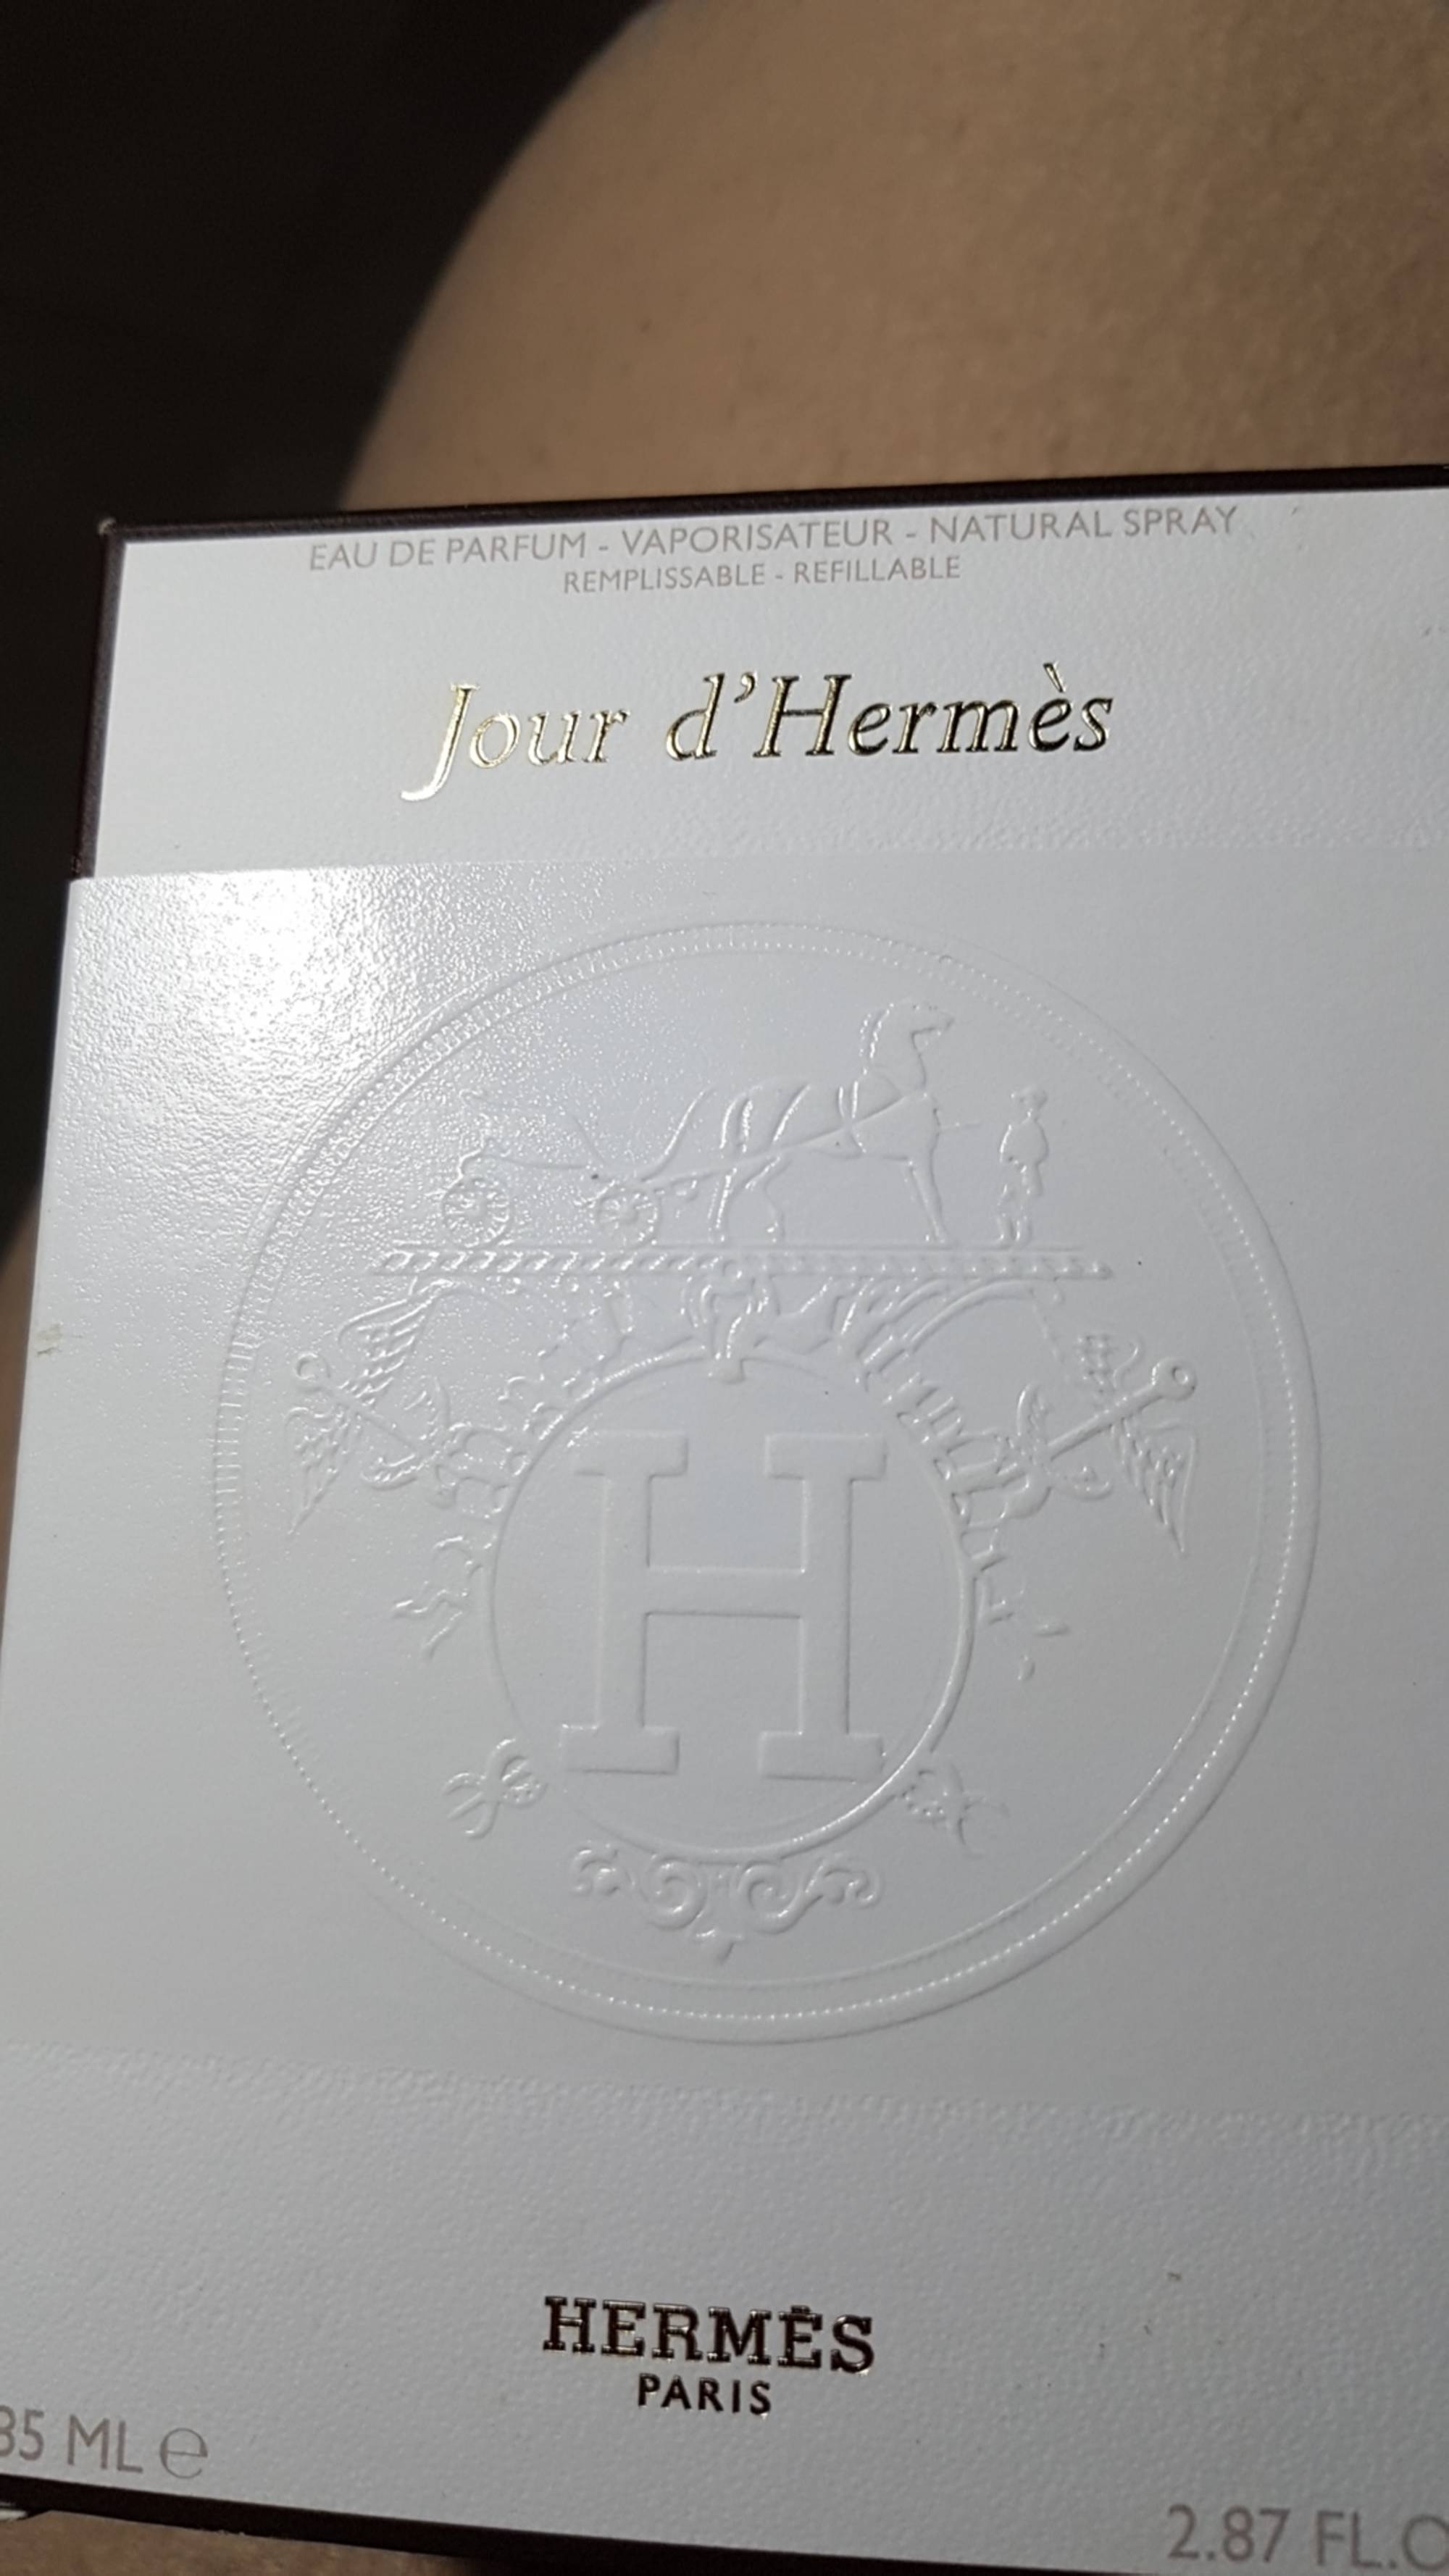 HERMES - Jour d'hermès - Eau de parfum